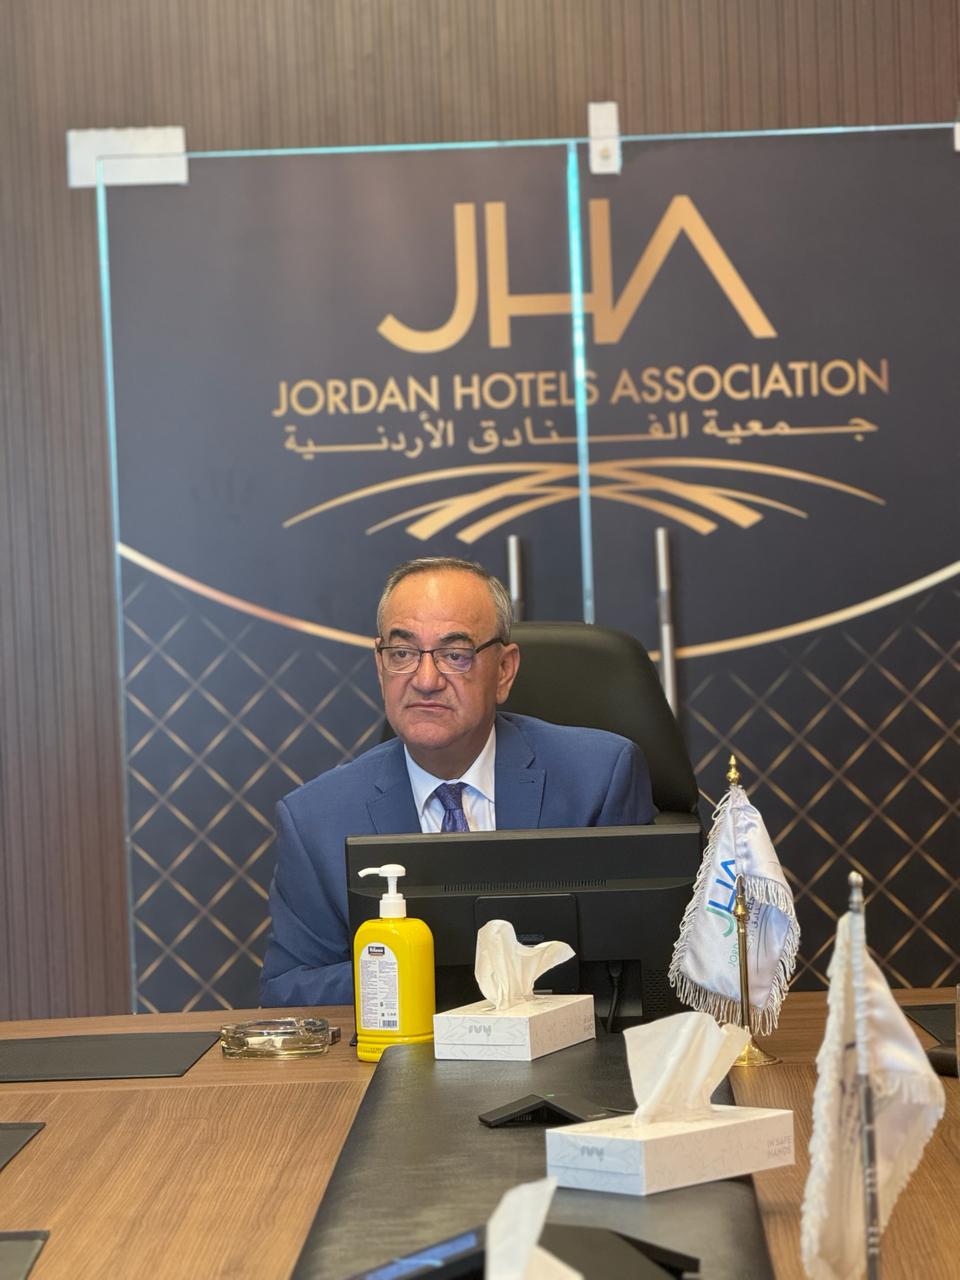 العين عبد الحكيم الهندي رئيس جمعية الفنادق الأردنية يترأس اجتماعاً مع التدريب المهني